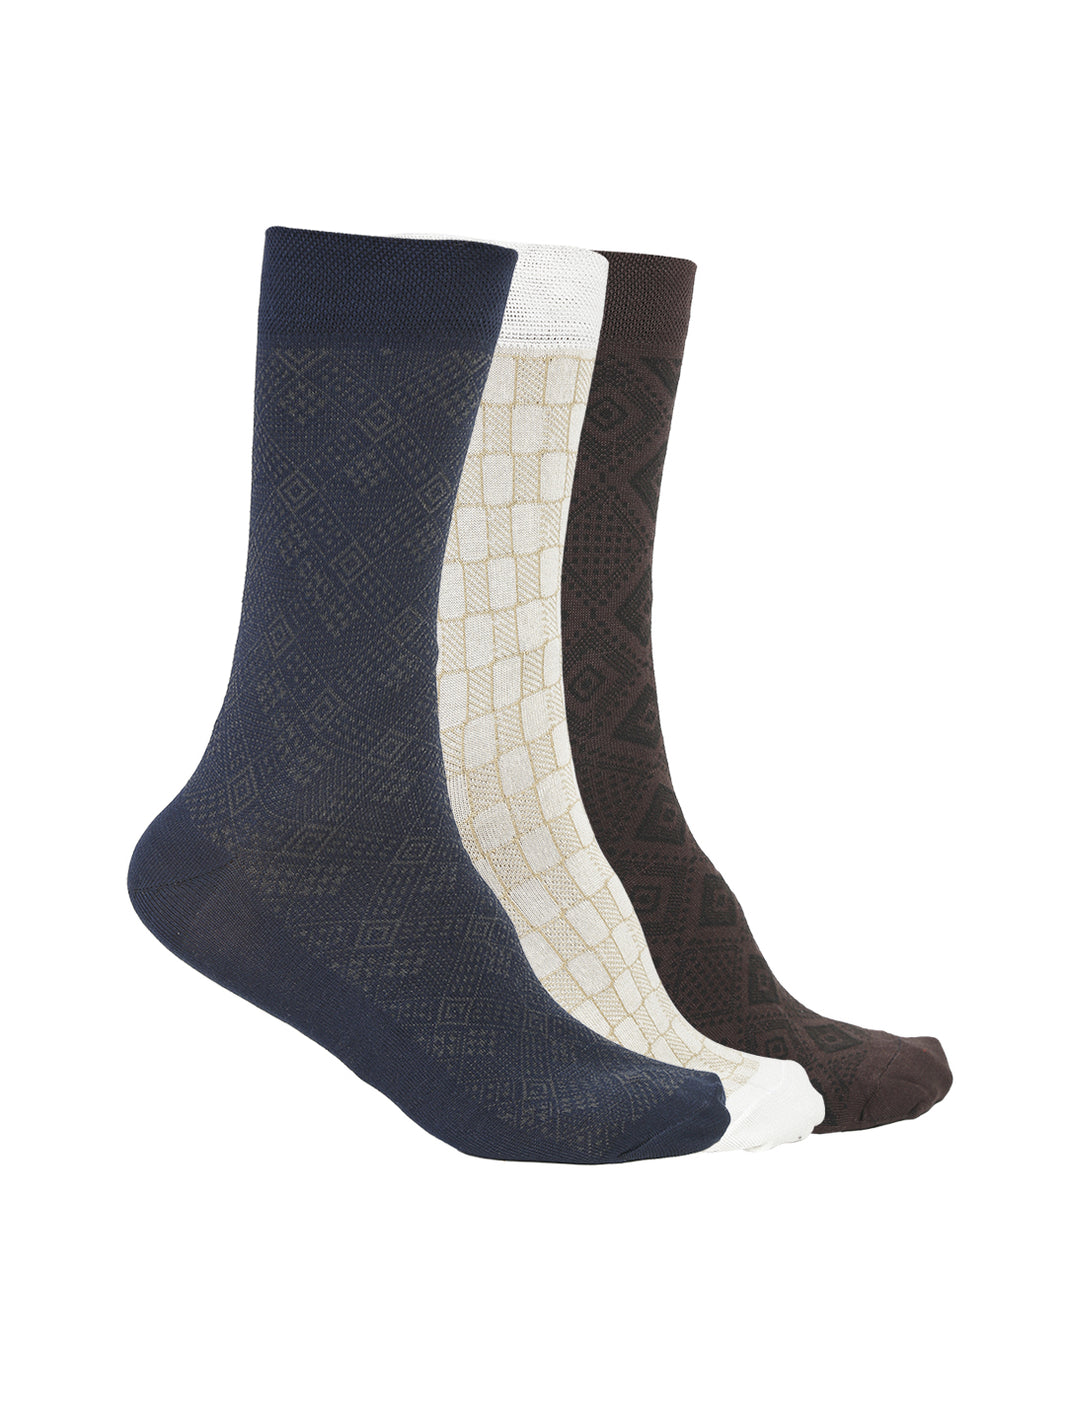 Vimal Jonney Men's Mercerised cotton Solid Full Socks, Free Size, Pack of 3 (Multicoloured)